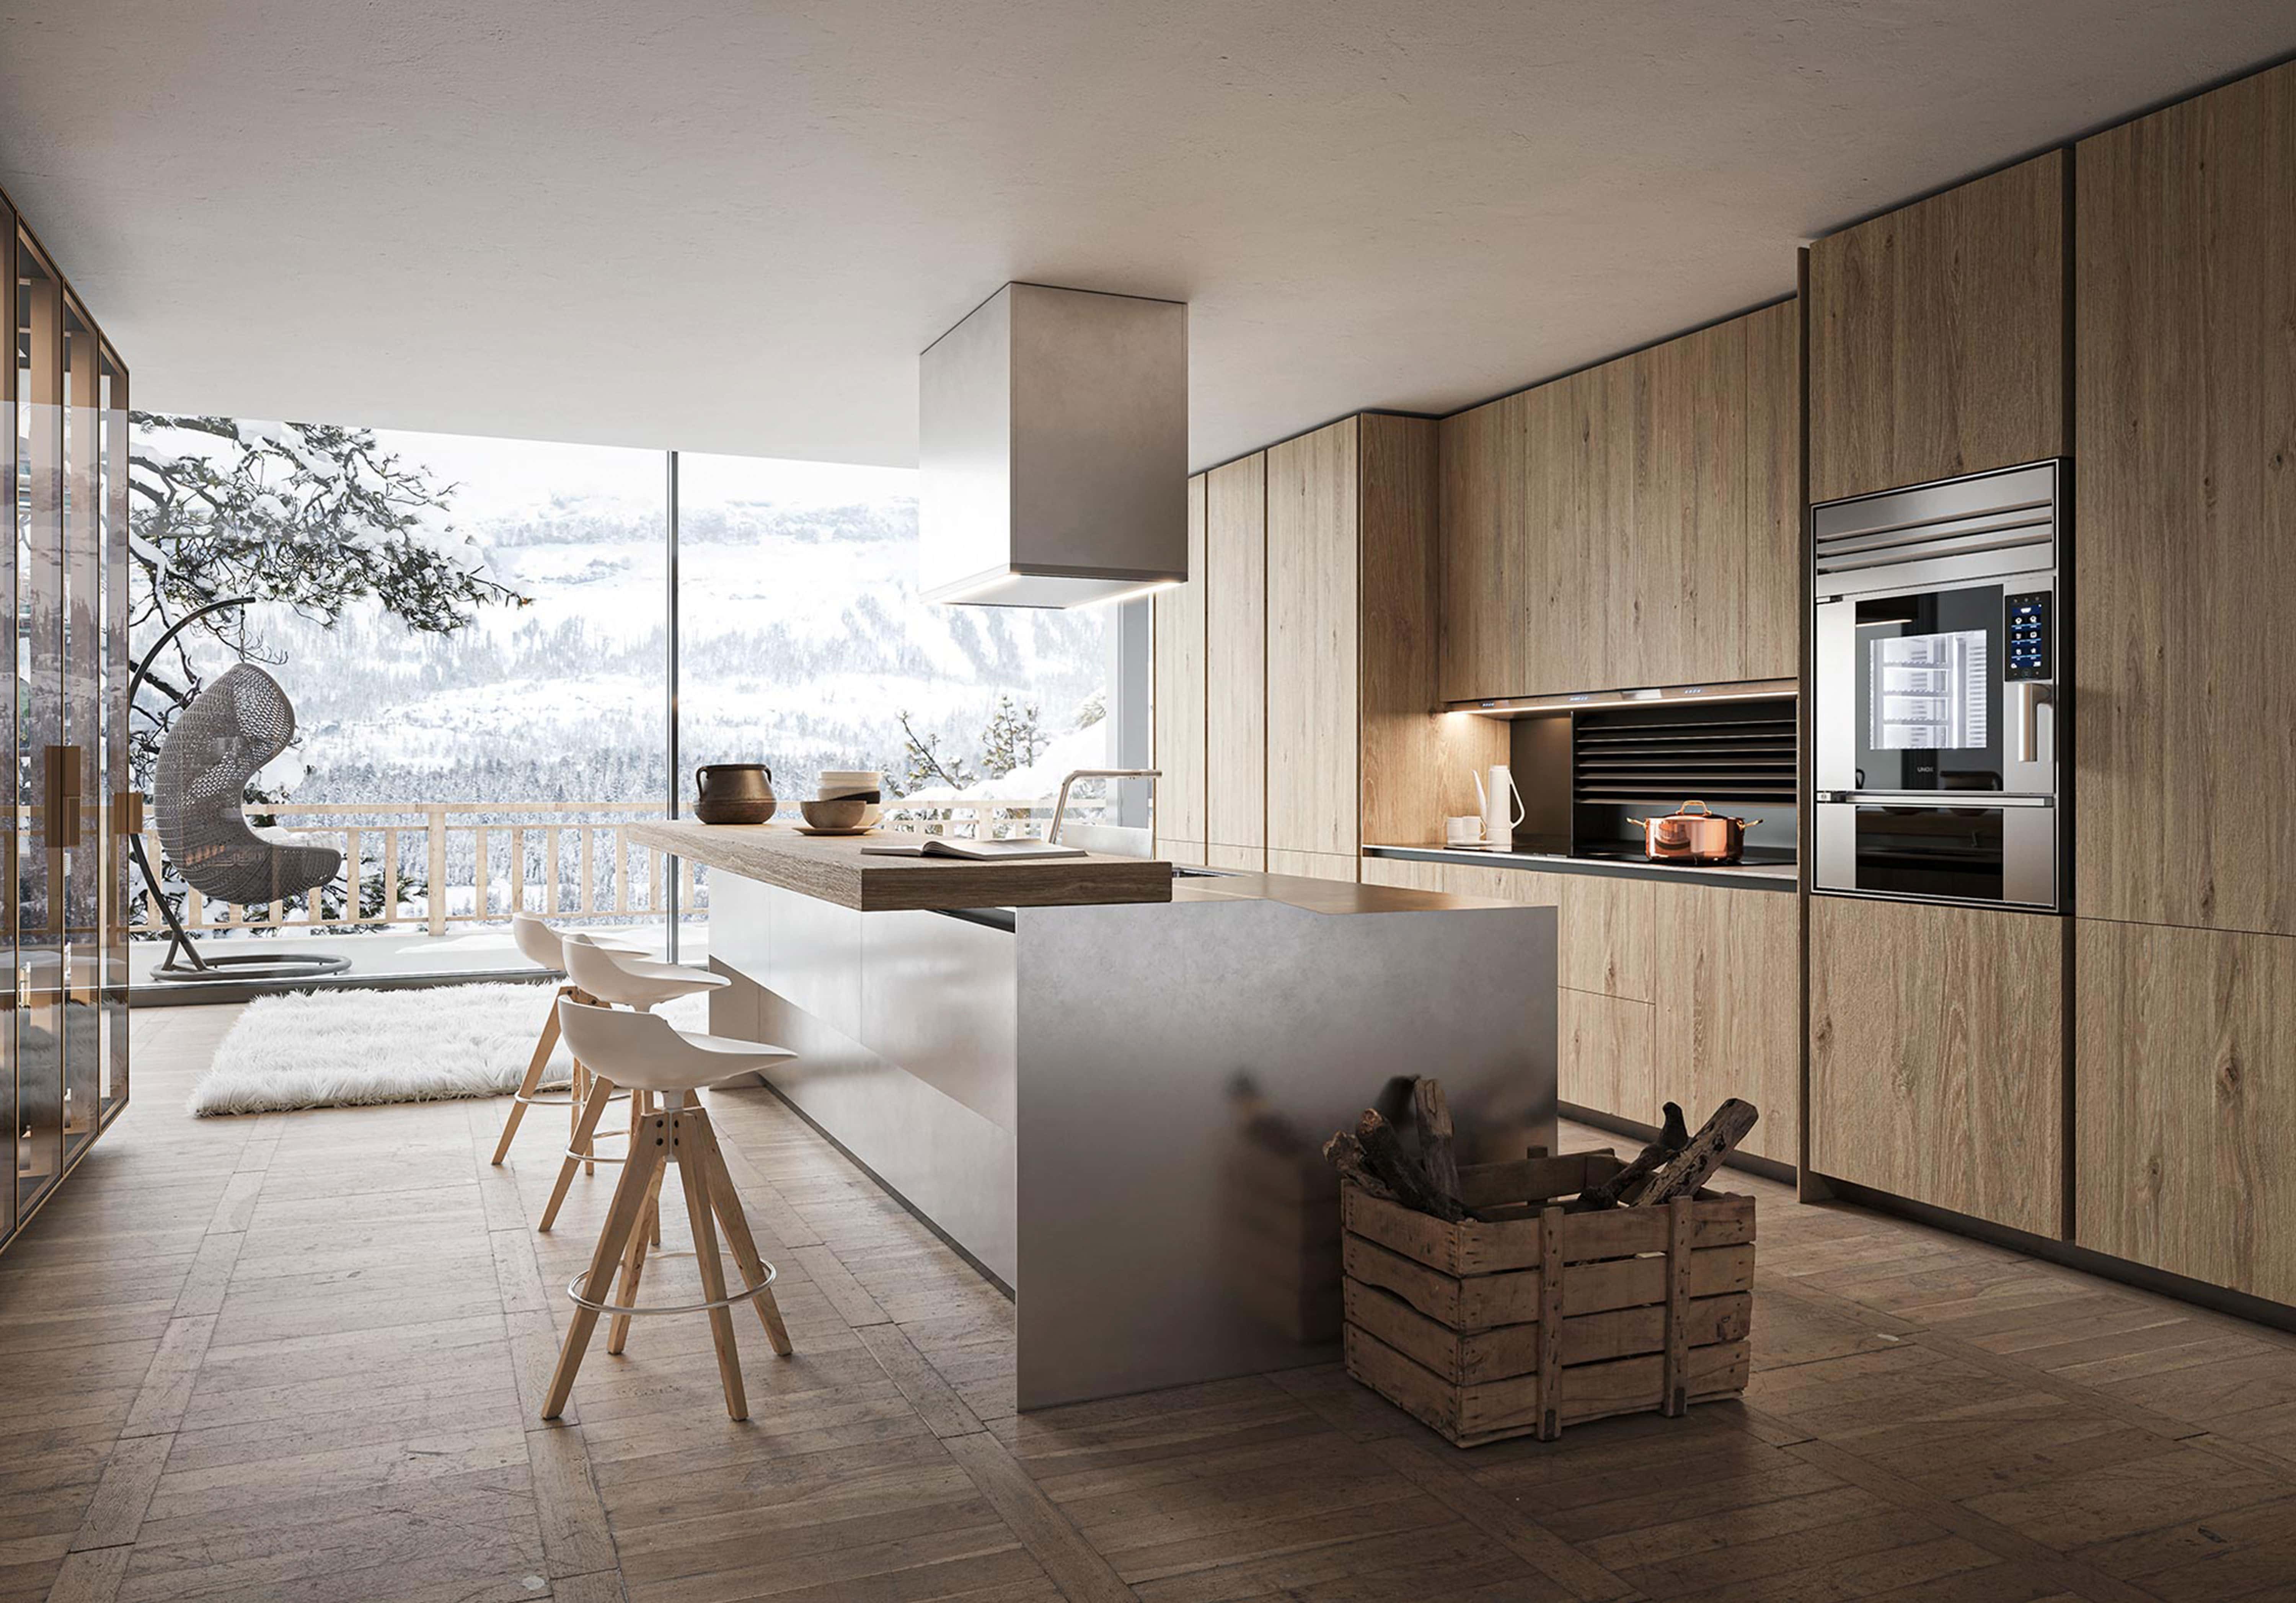  Cocina minimalista con horno inteligente de Unox Casa en un chalet de montaña en Cortina D'Ampezzo